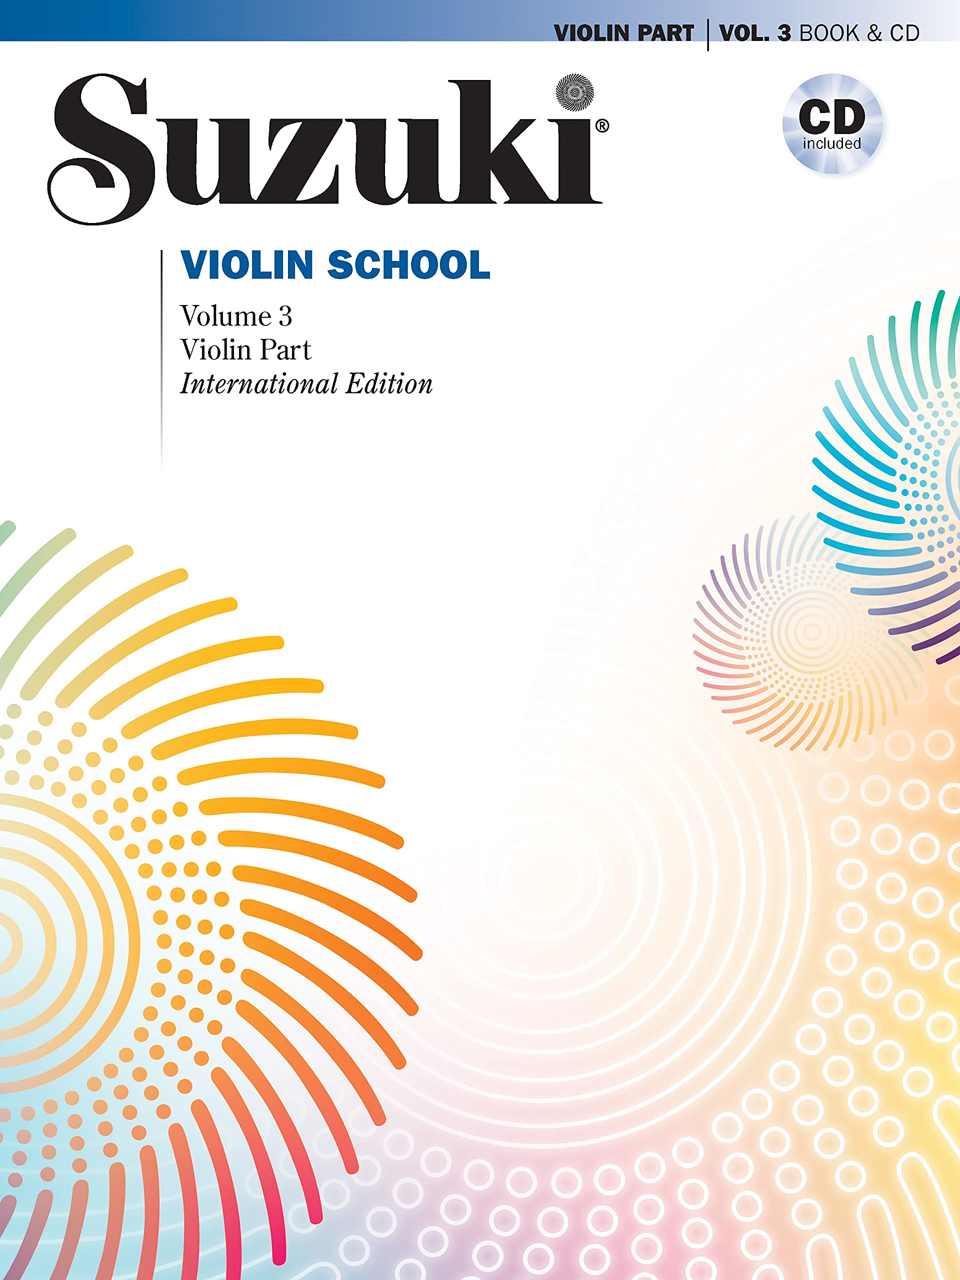 Best Violin Books - Suzuki Violin School - Violin Part - Volume 3